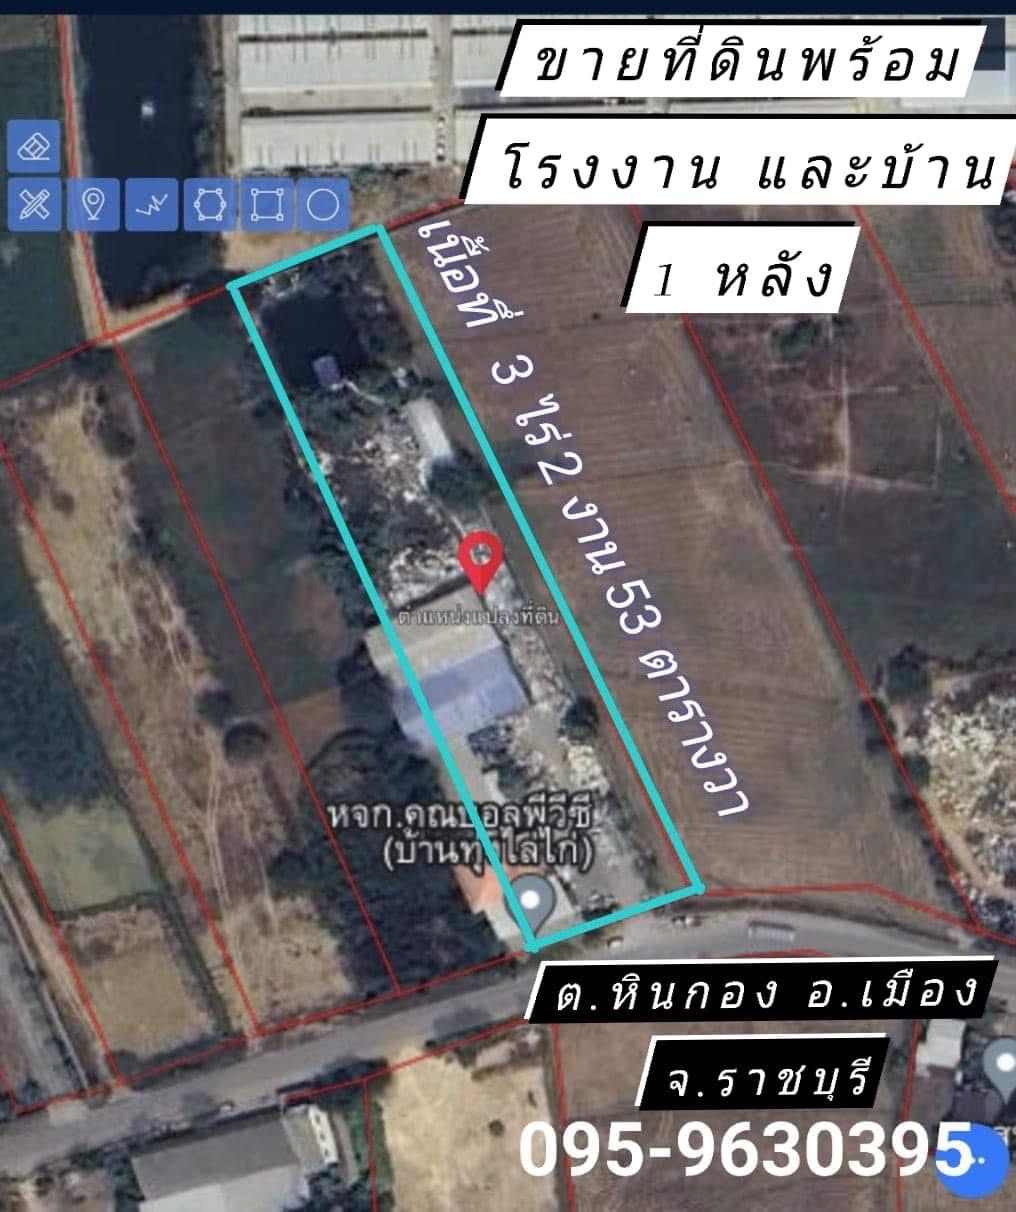 M-3494 ขายที่ดิน พร้อมโรงงาน 3-2-53 ไร่ พร้อมสิ่งปลูกสร้าง ใกล้ อบต.หินกอง อ.เมืองราชบุรี จ.ราชบุรี